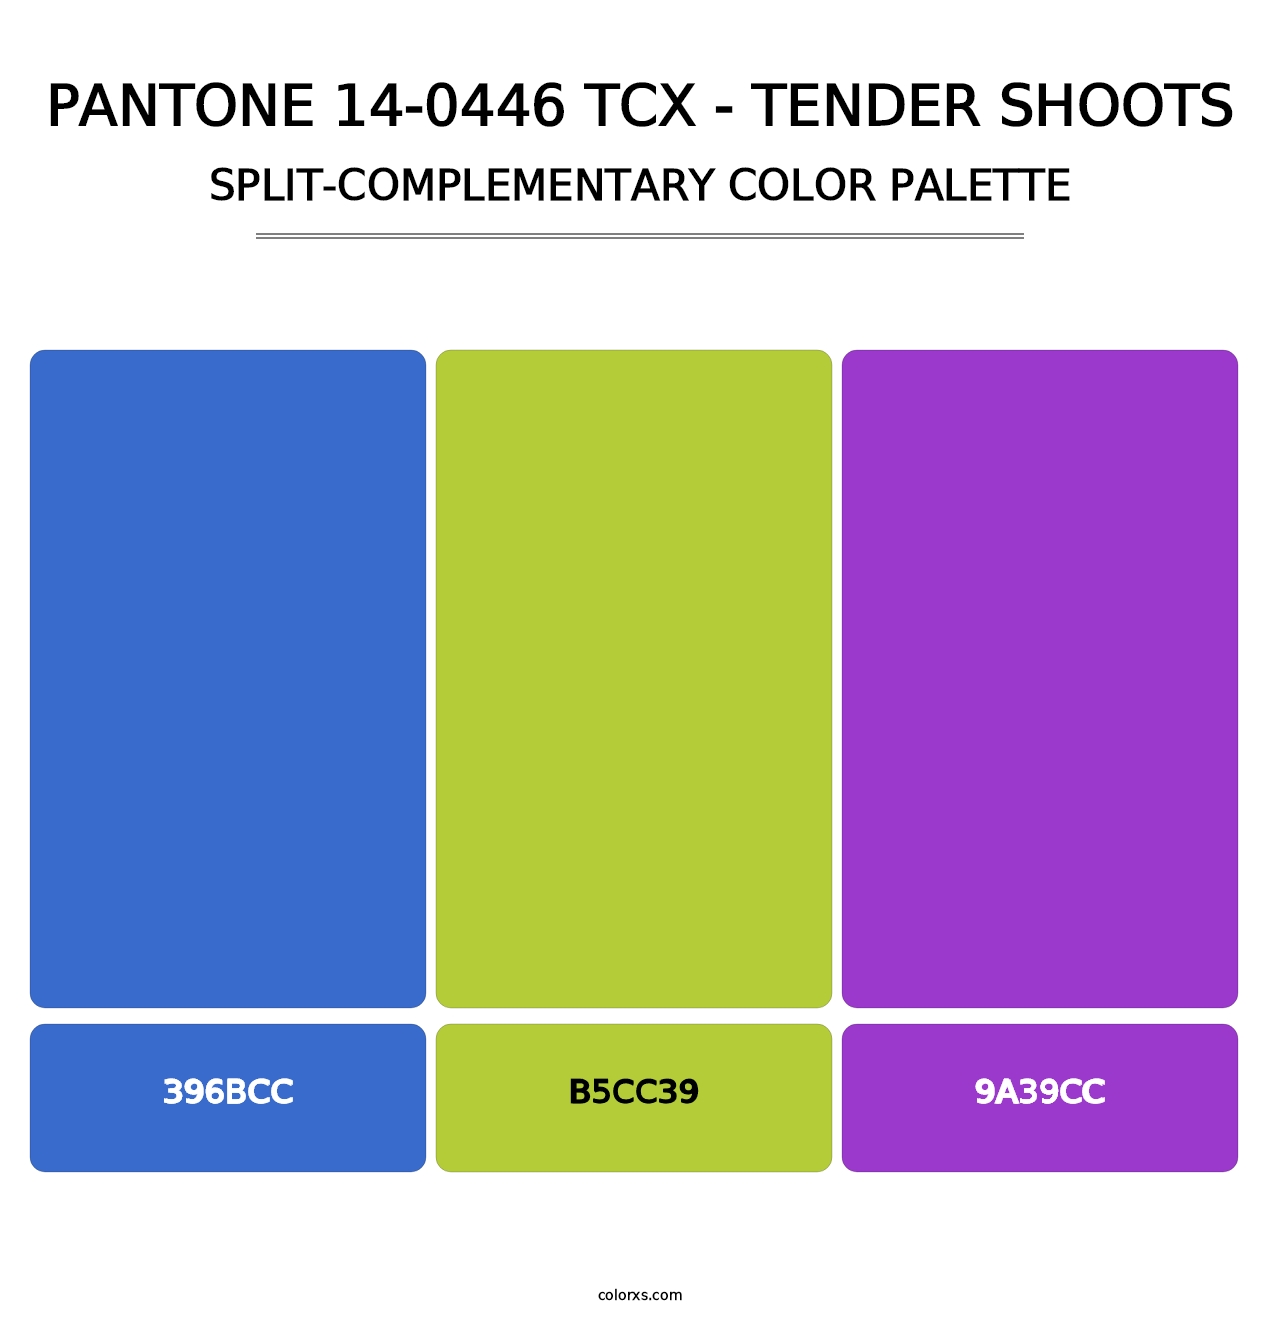 PANTONE 14-0446 TCX - Tender Shoots - Split-Complementary Color Palette